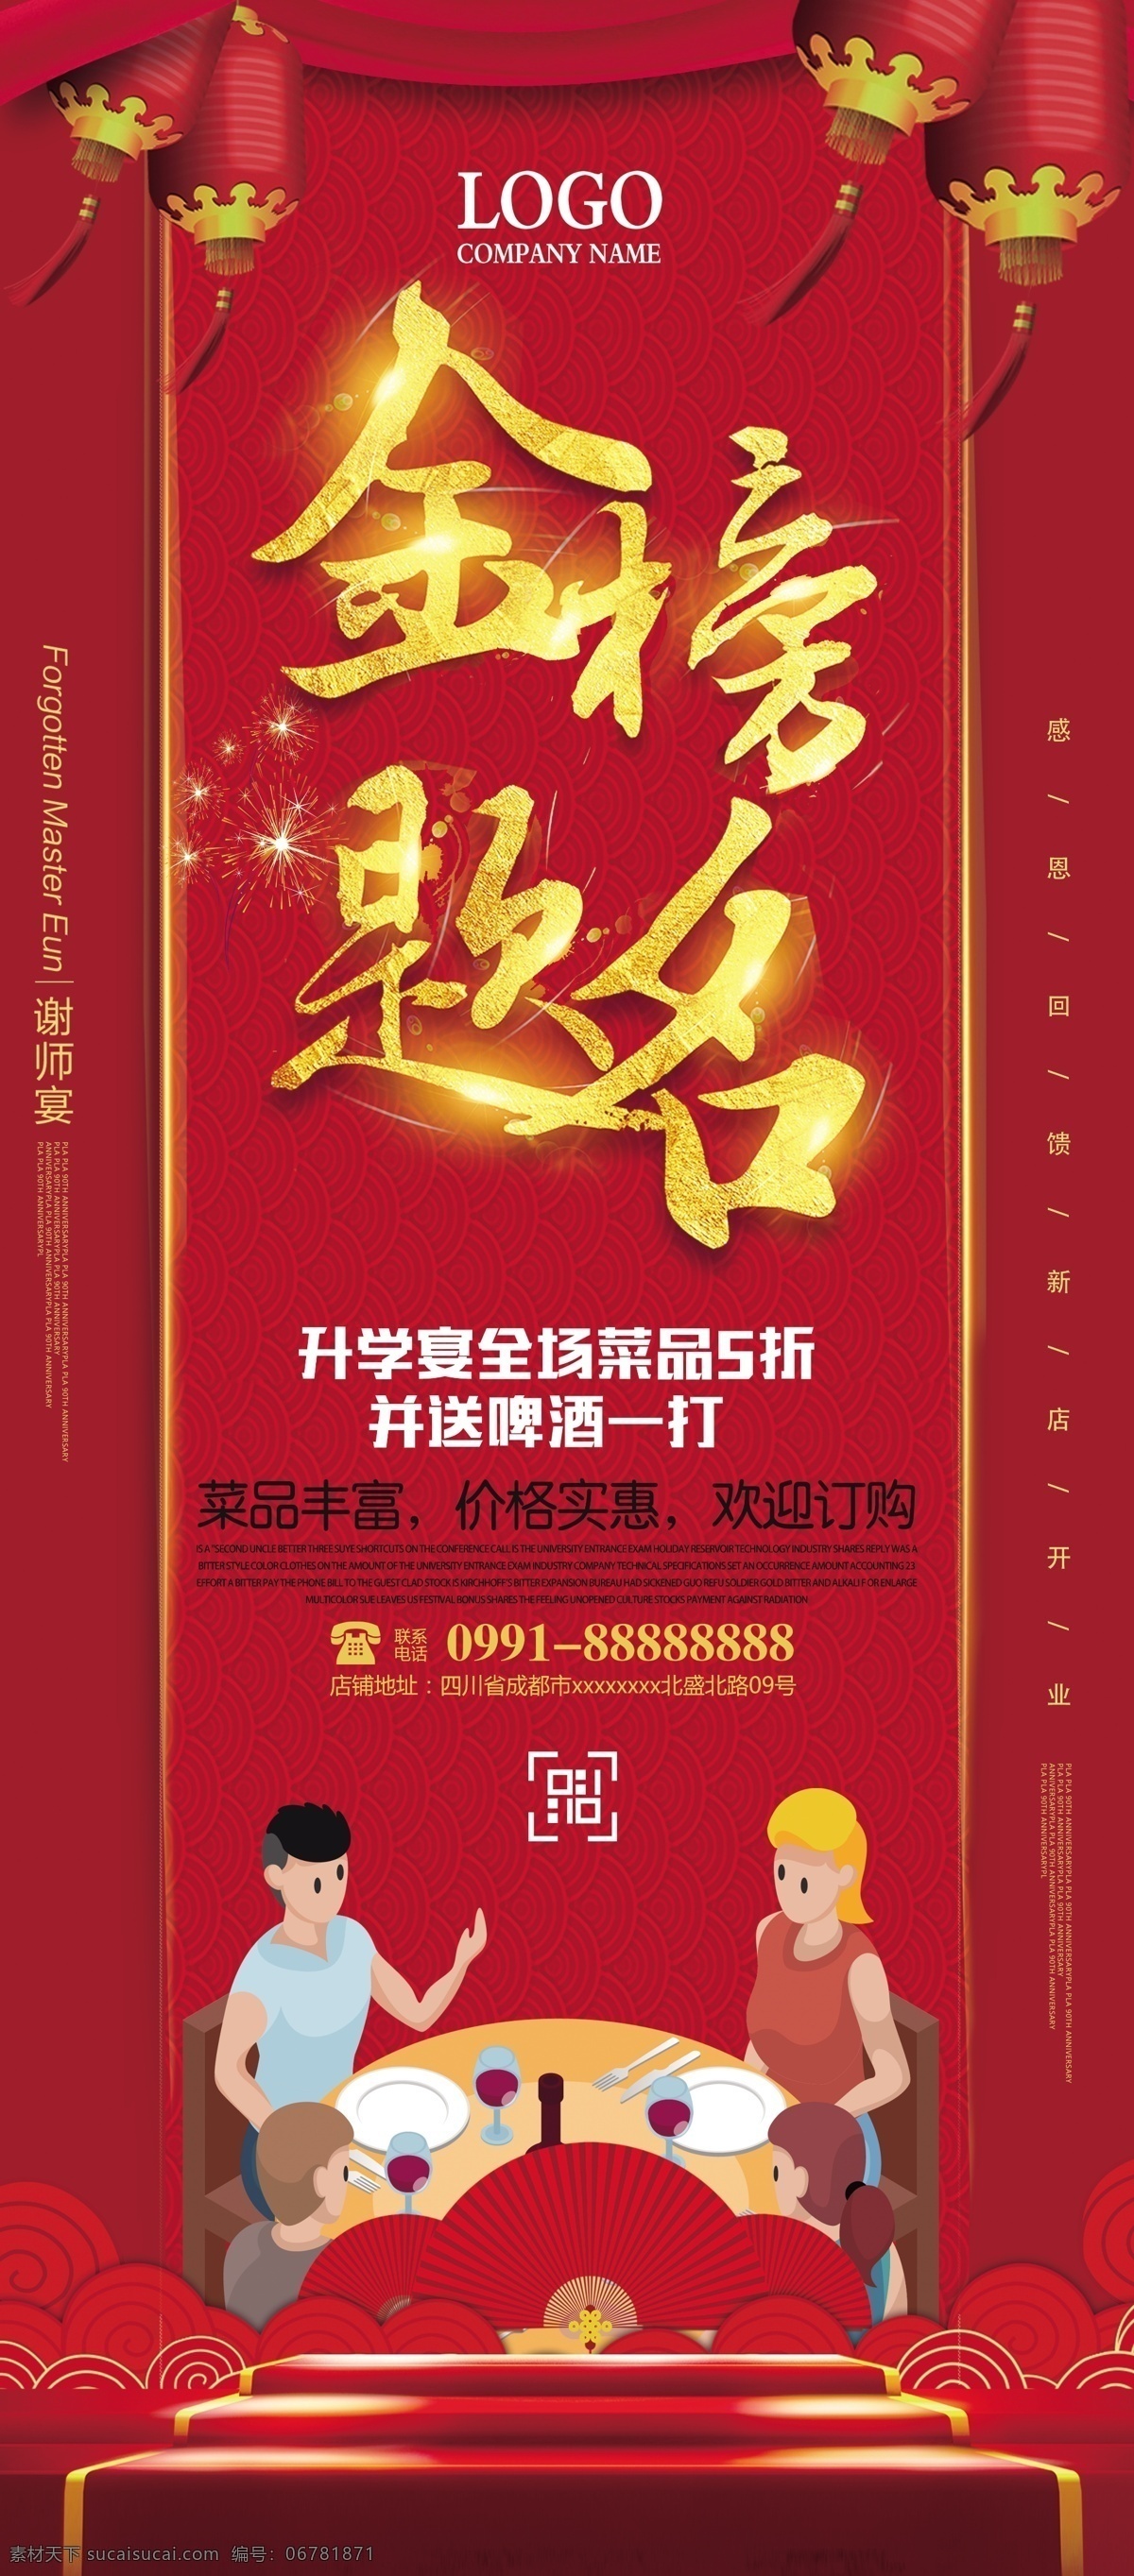 红色 中 国风 高考 金榜题名 升学 宴 易拉宝 展架 x展架设计 展板 免费 公司x展架 企业 模板 创意展架设计 时尚展架设计 宣传广告 画面设计 创意 x 免费模板 平面素材